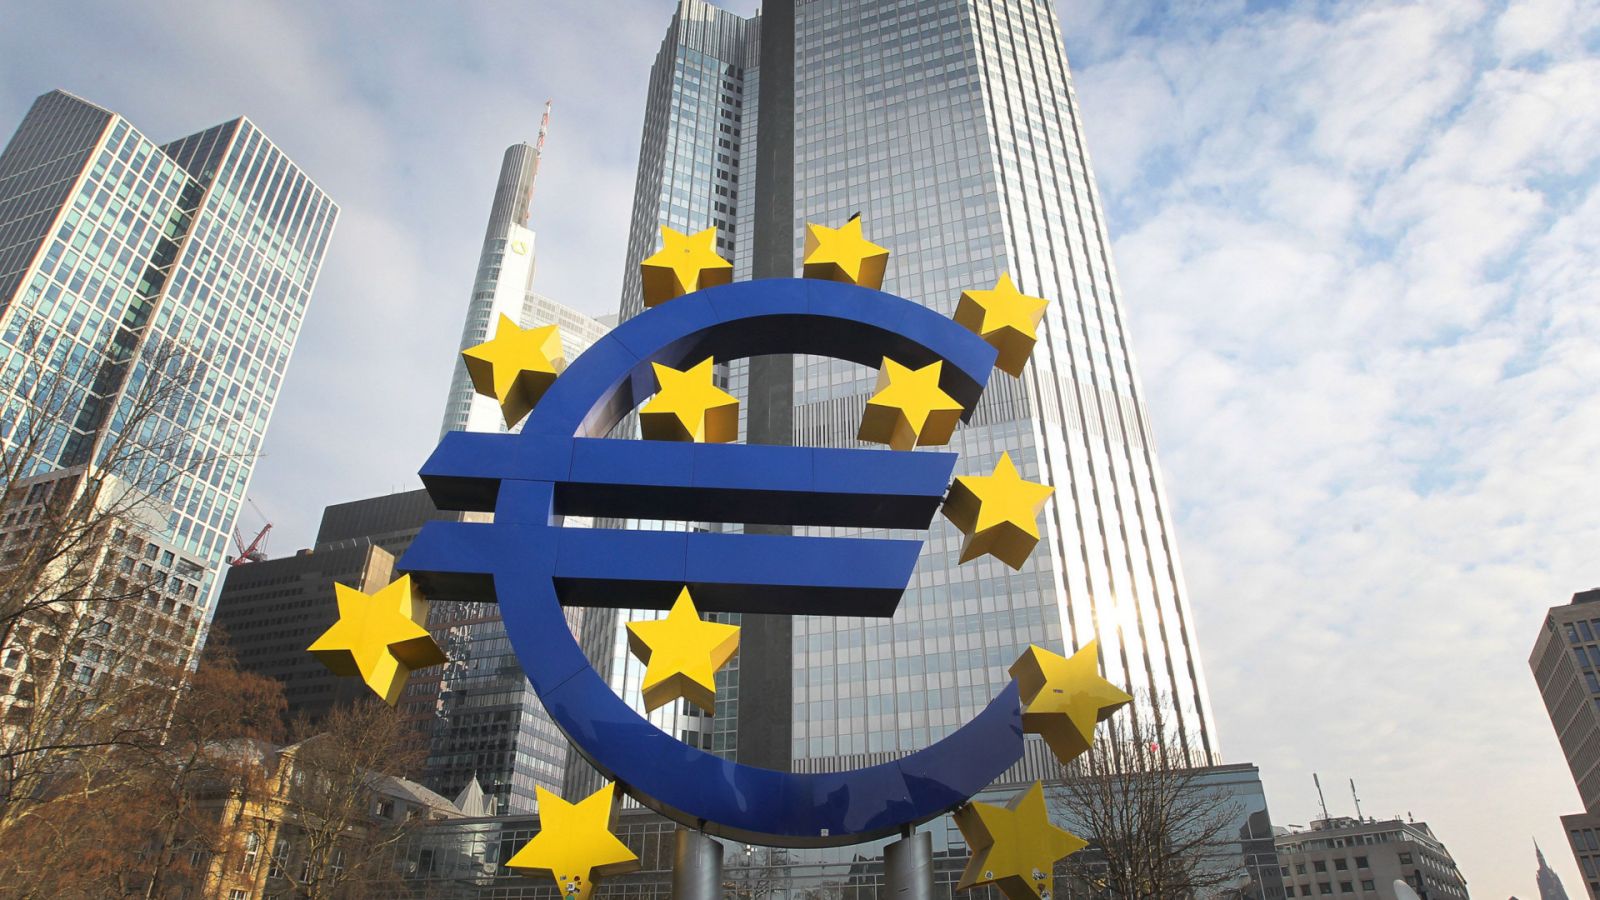 27 nước thành viên EU đồng thuận cùng vay một gói nợ chung quy mô hơn 900 tỷ USD.